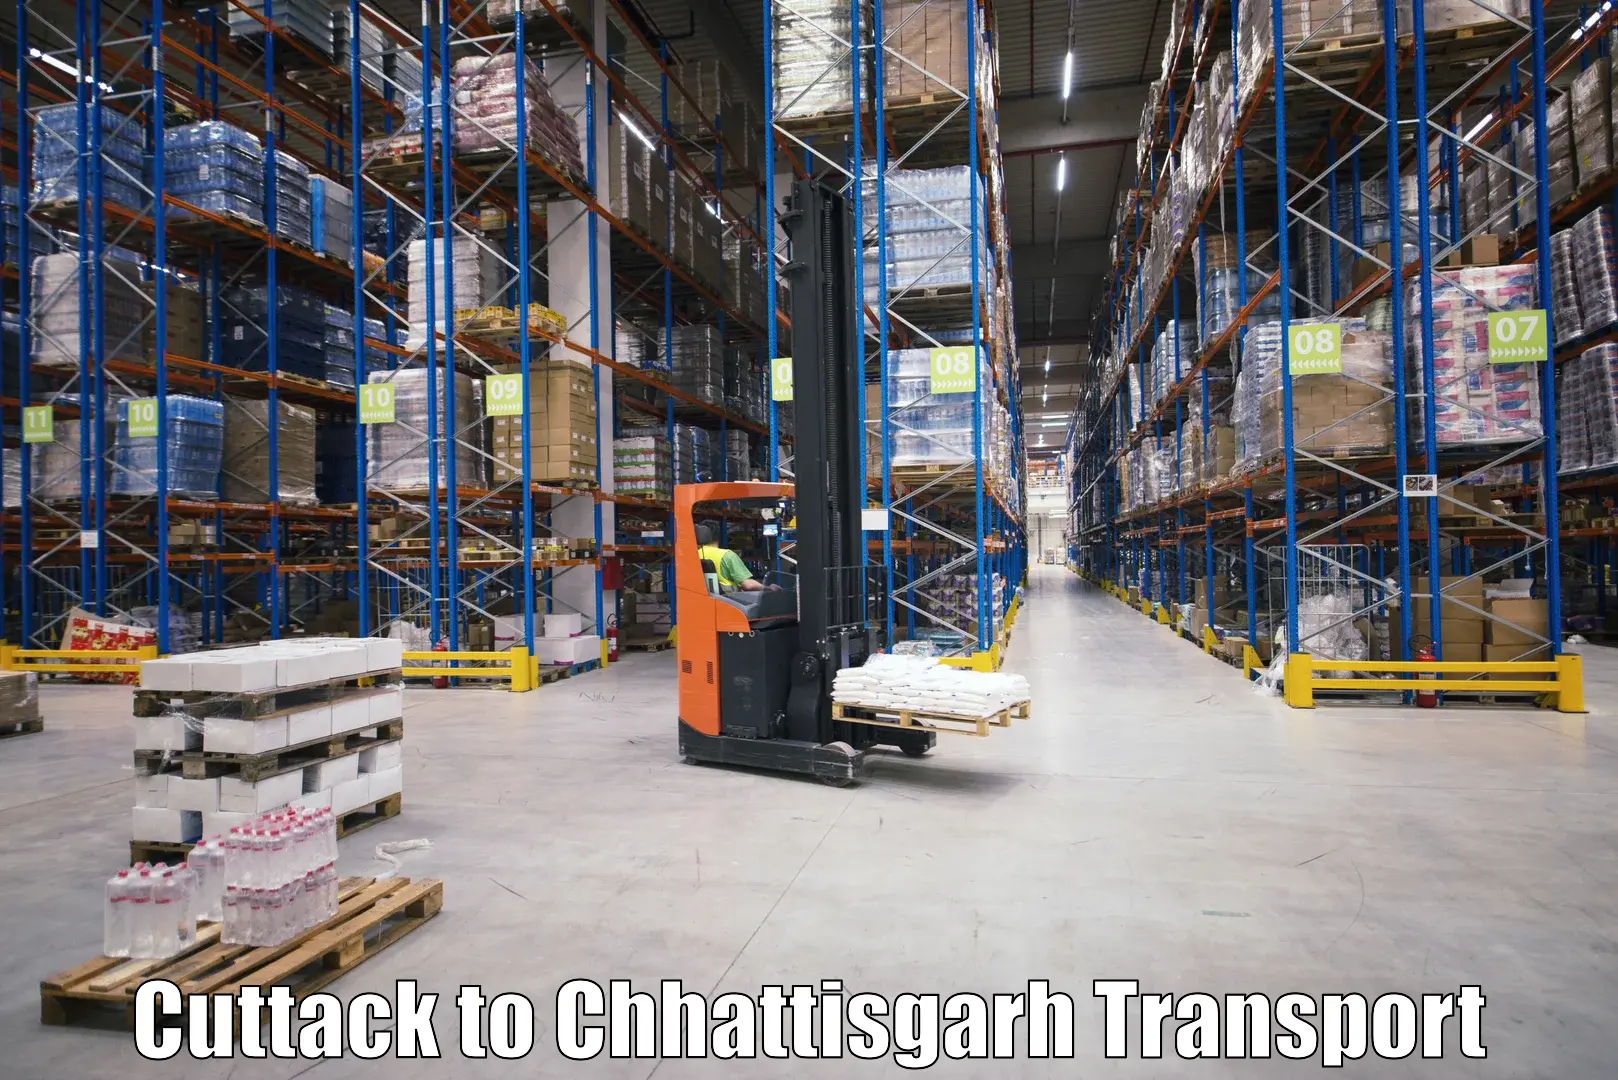 Online transport service Cuttack to Chhattisgarh